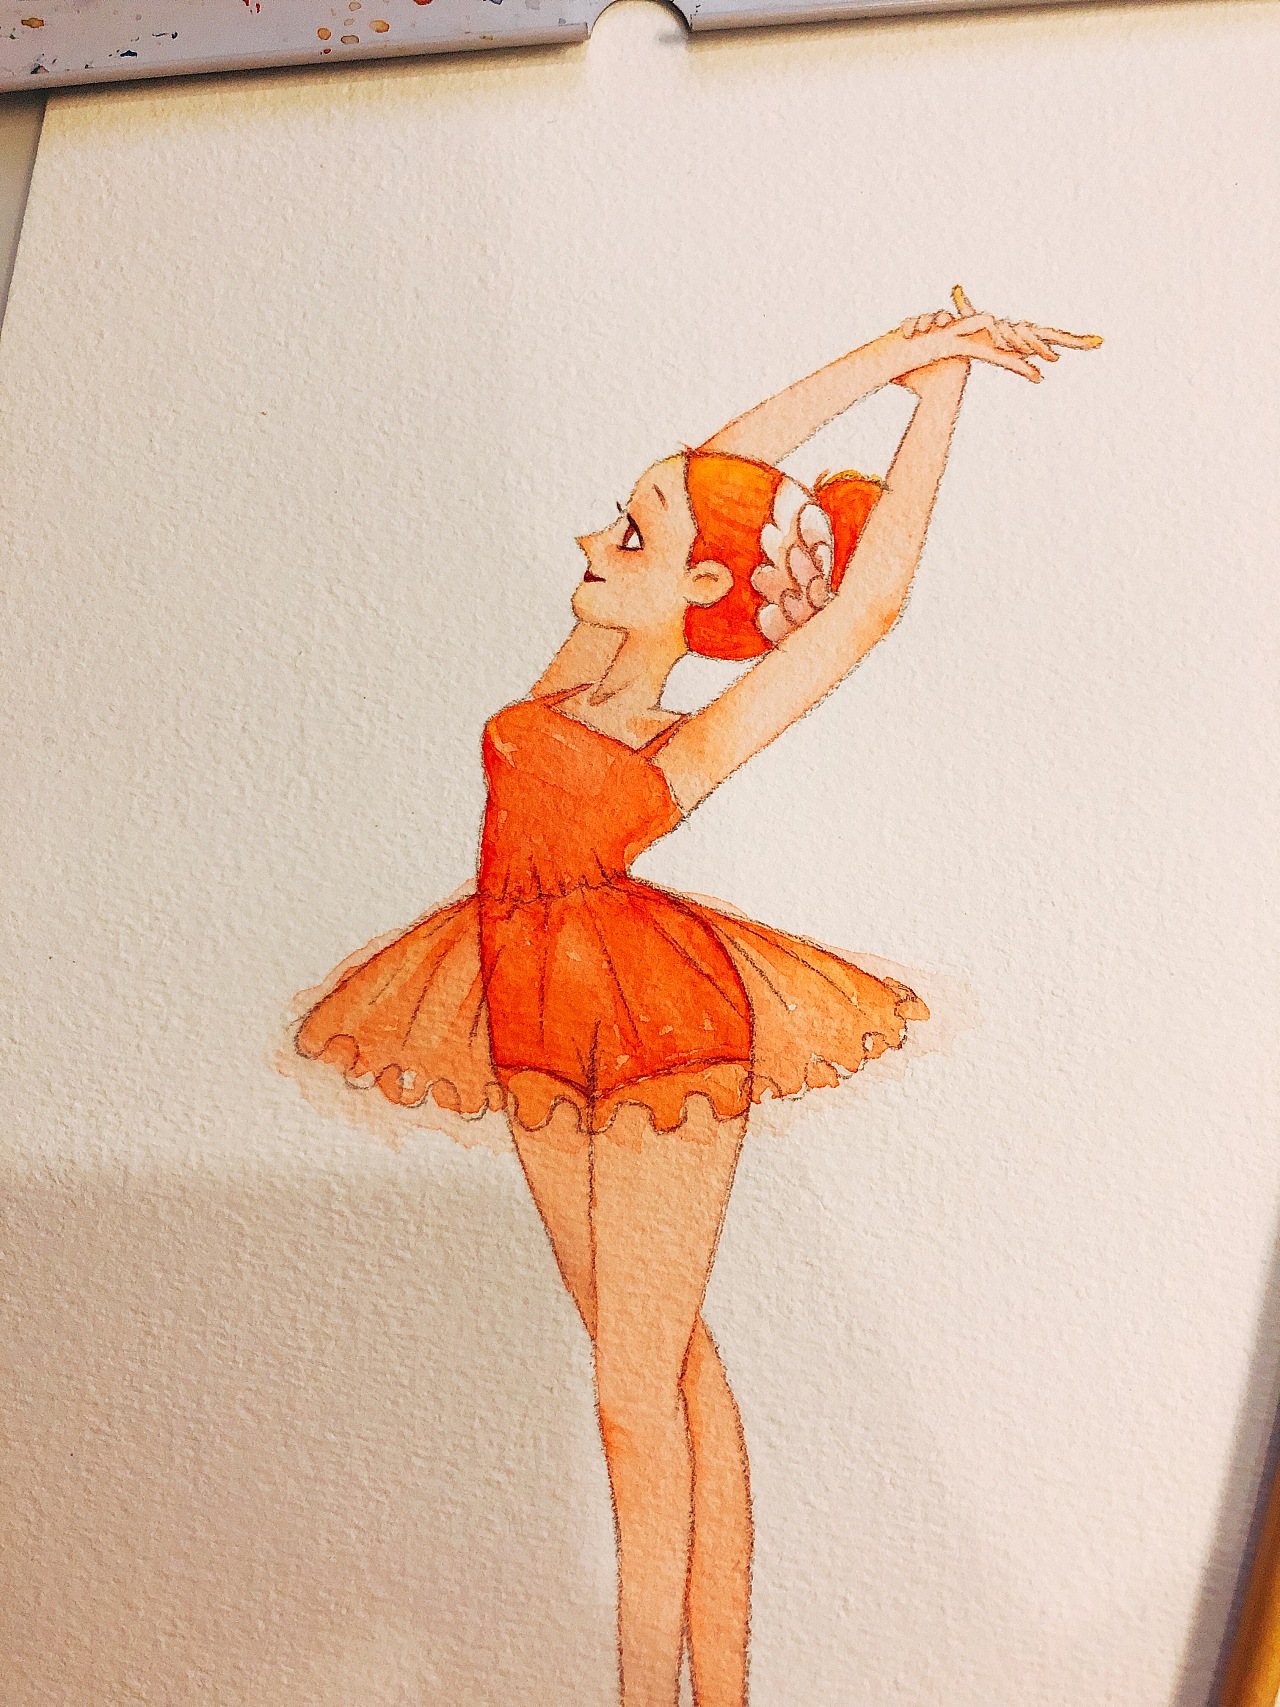 可爱的卡通少儿芭蕾舞者插画图片素材免费下载_觅知网